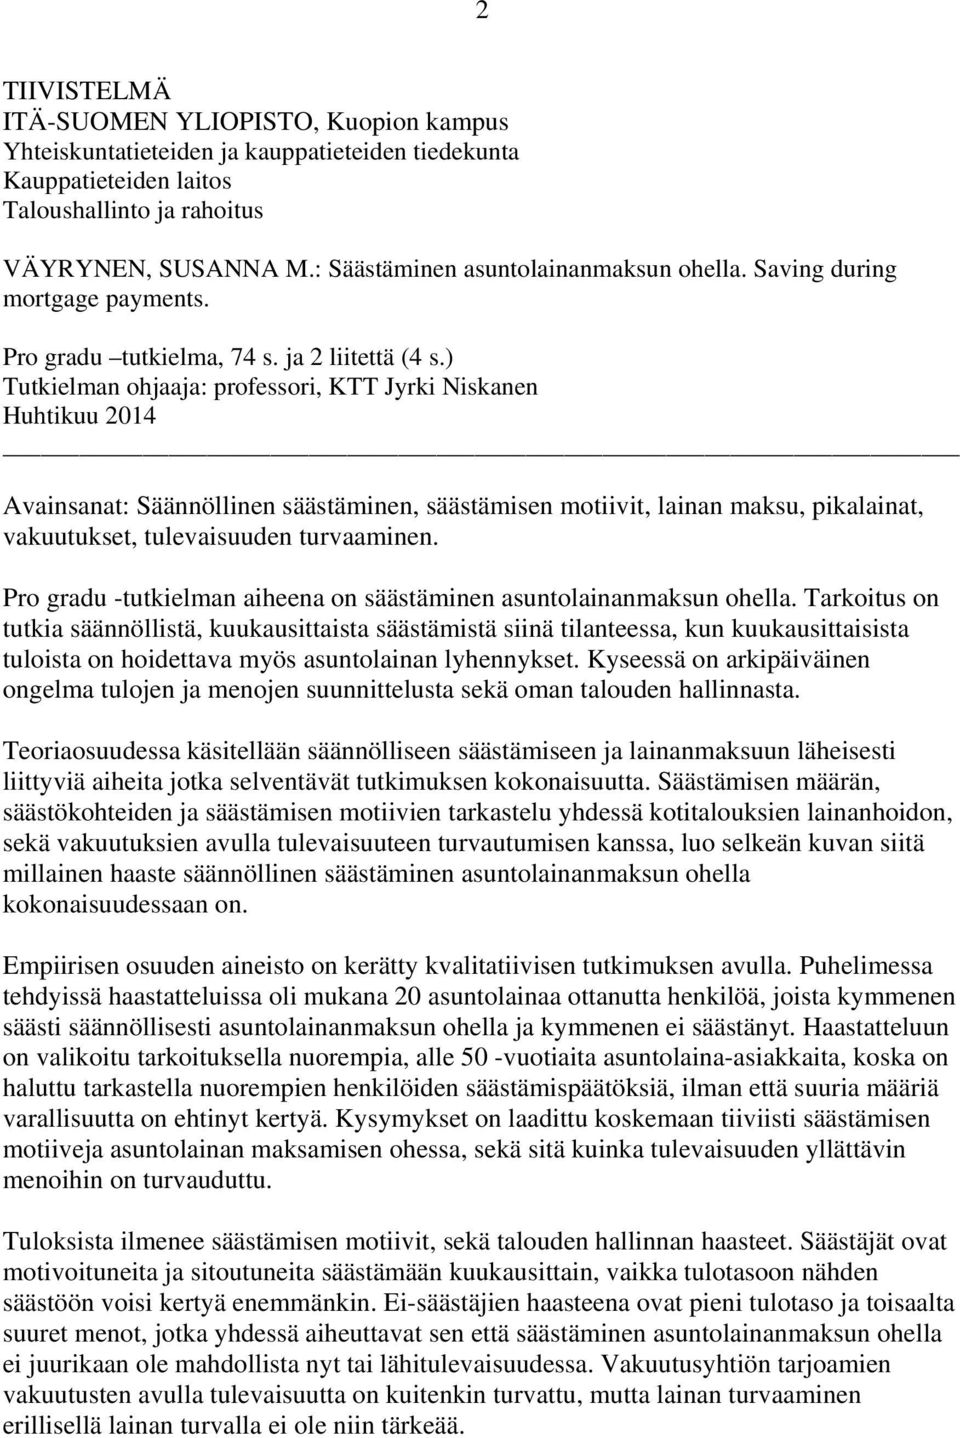 ) Tutkielman ohjaaja: professori, KTT Jyrki Niskanen Huhtikuu 2014 Avainsanat: Säännöllinen säästäminen, säästämisen motiivit, lainan maksu, pikalainat, vakuutukset, tulevaisuuden turvaaminen.